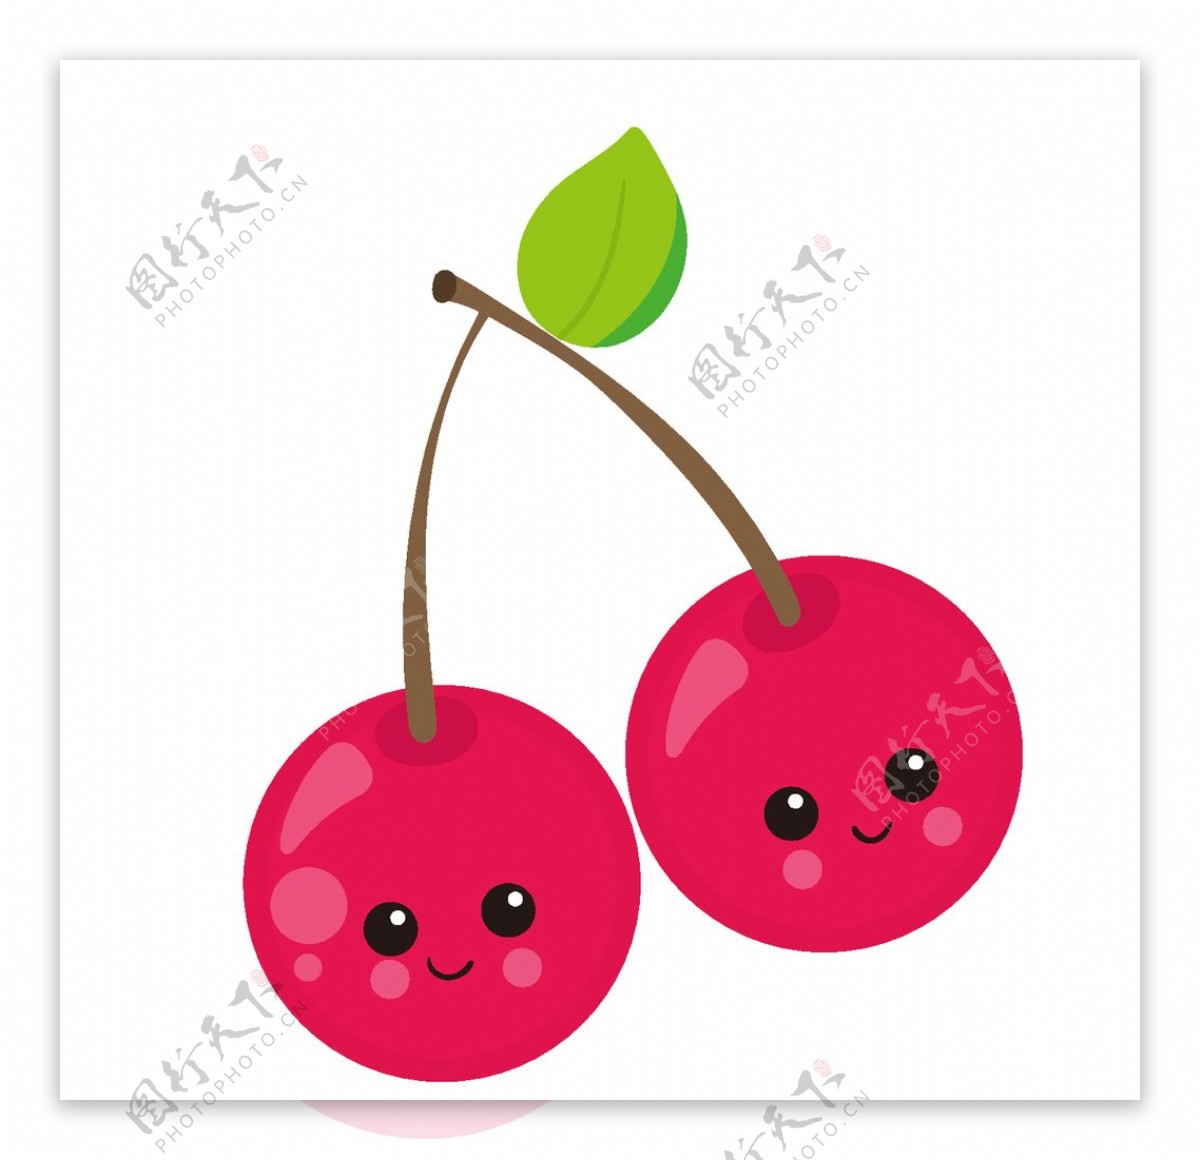 樱桃水果创意可爱卡通矢量素材